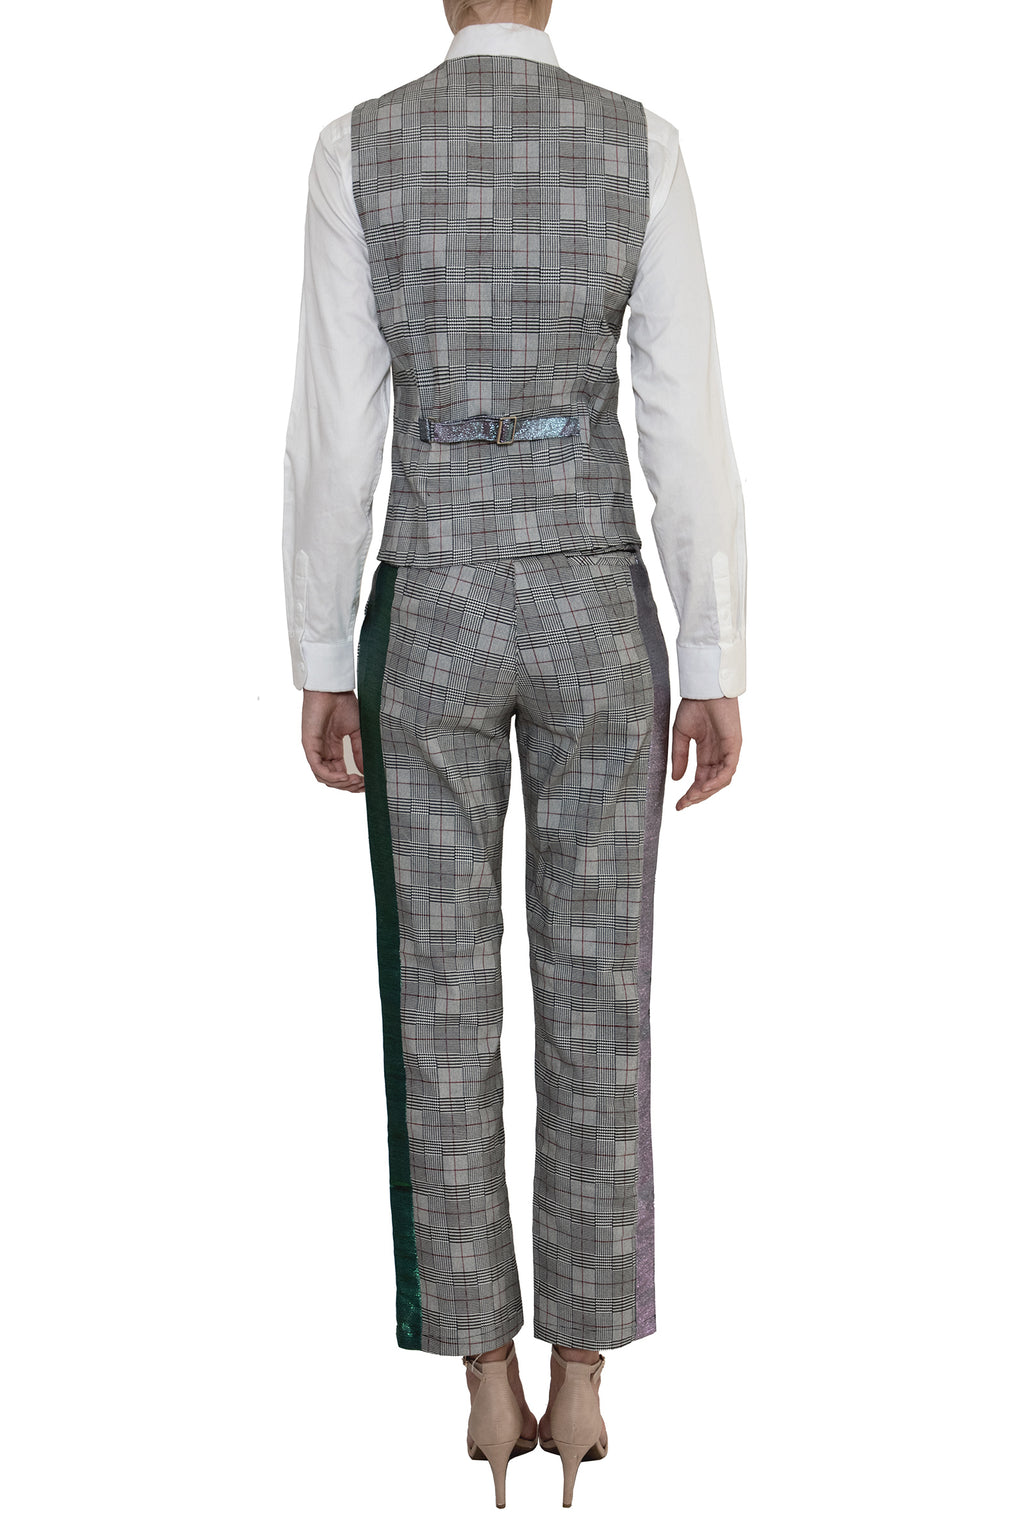 Adrian Schachter Grey Checkered Suit Waistcoat